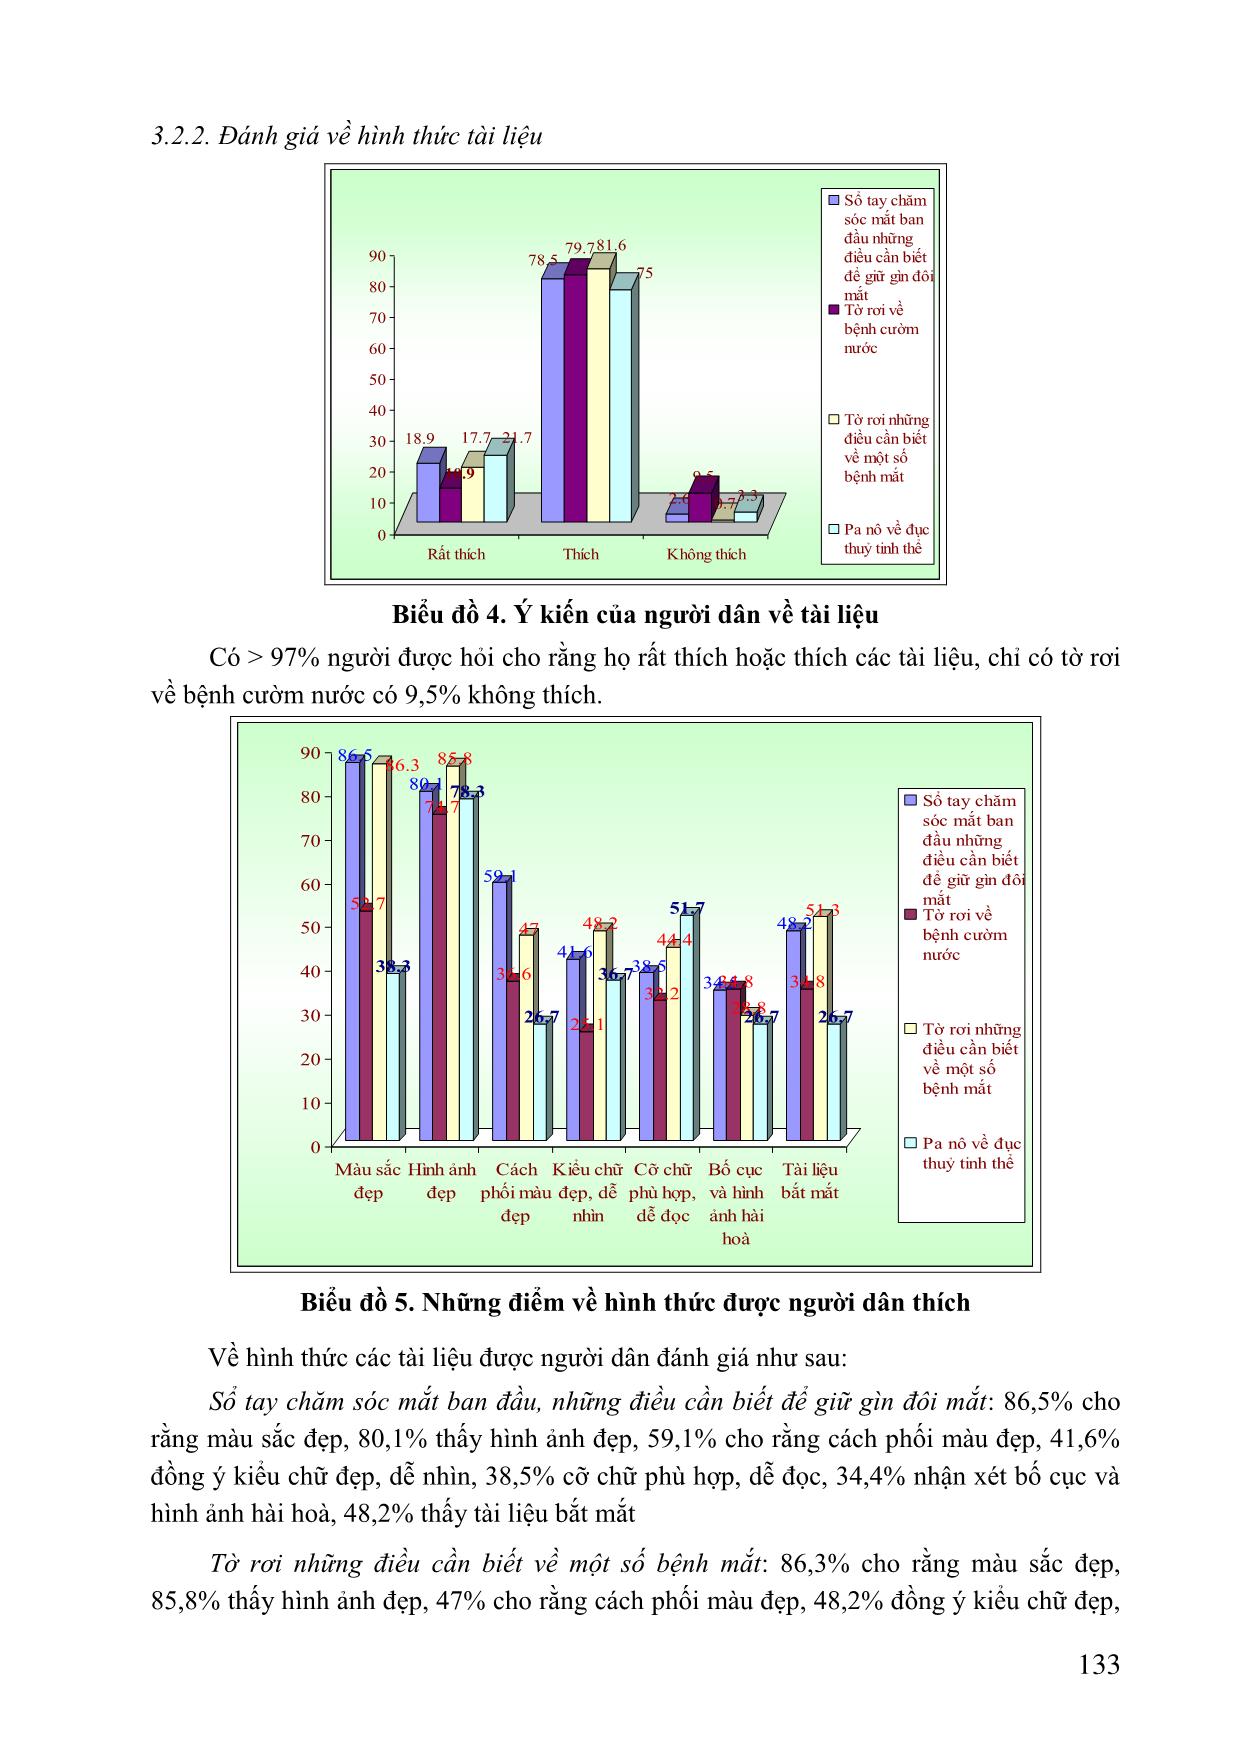 Đánh giá tính phù hợp của tài liệu truyền thông chăm sóc mắt tại tỉnh Quảng Nam trang 5